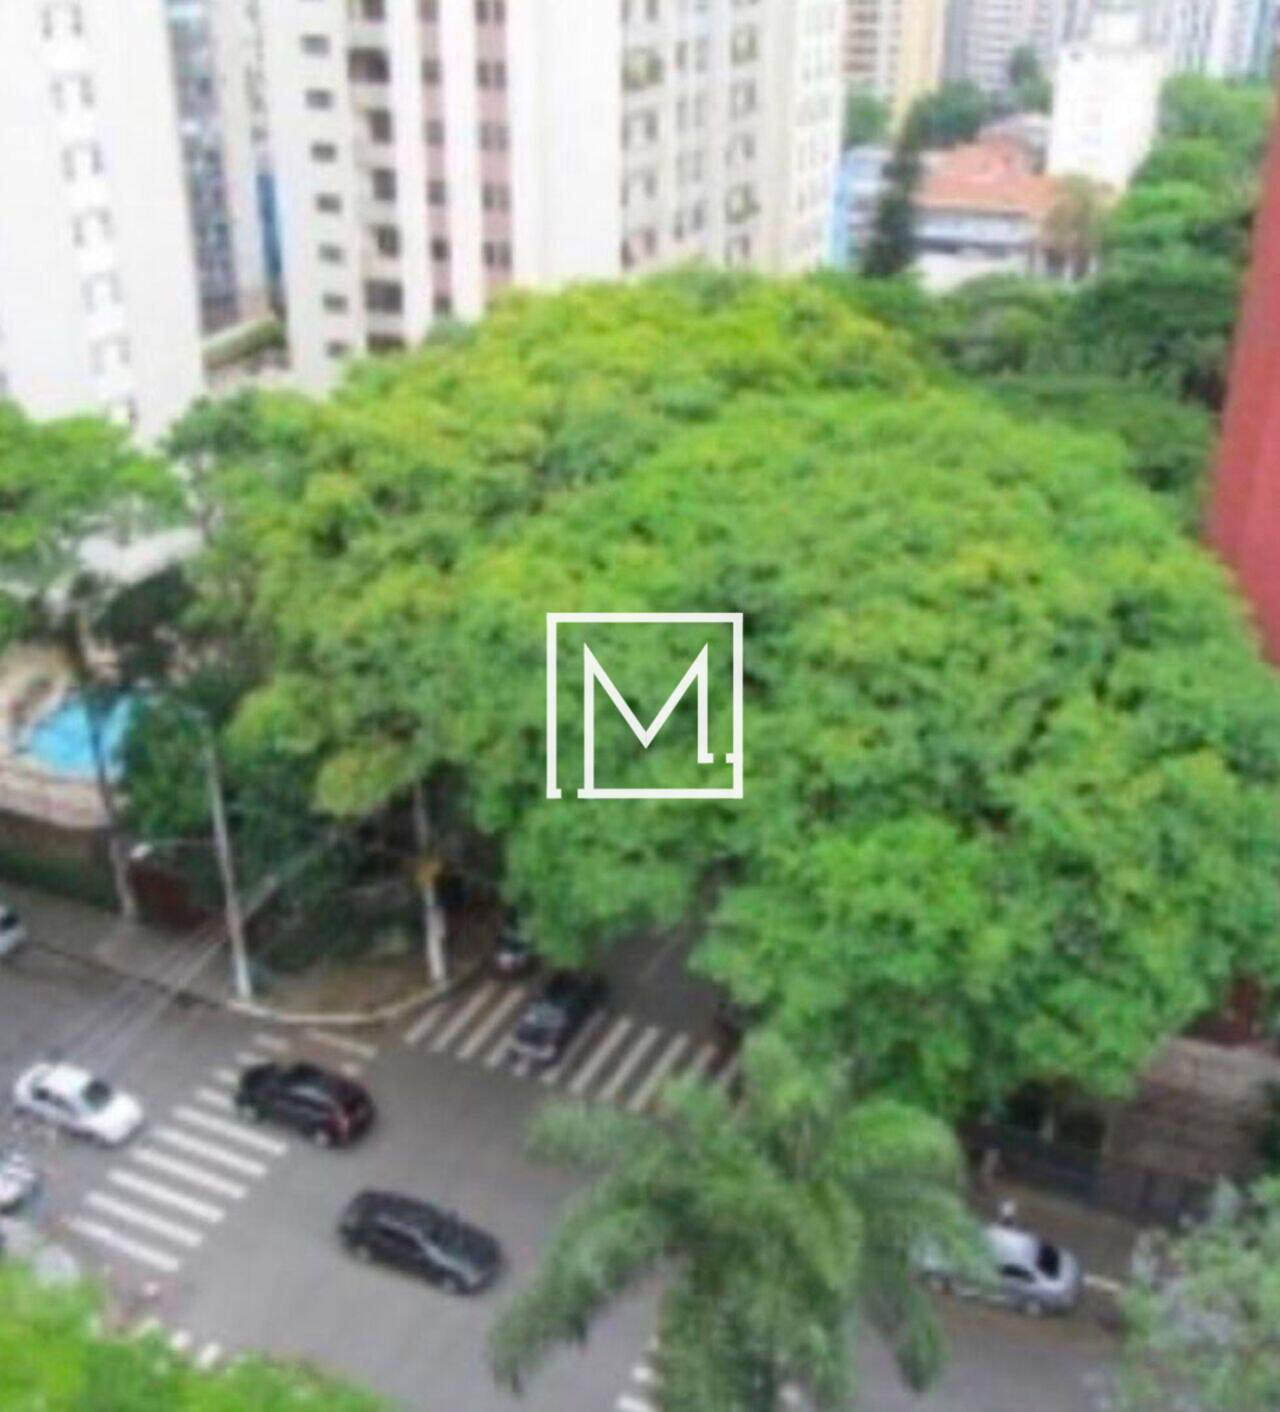 Apartamento Campo Belo, São Paulo - SP